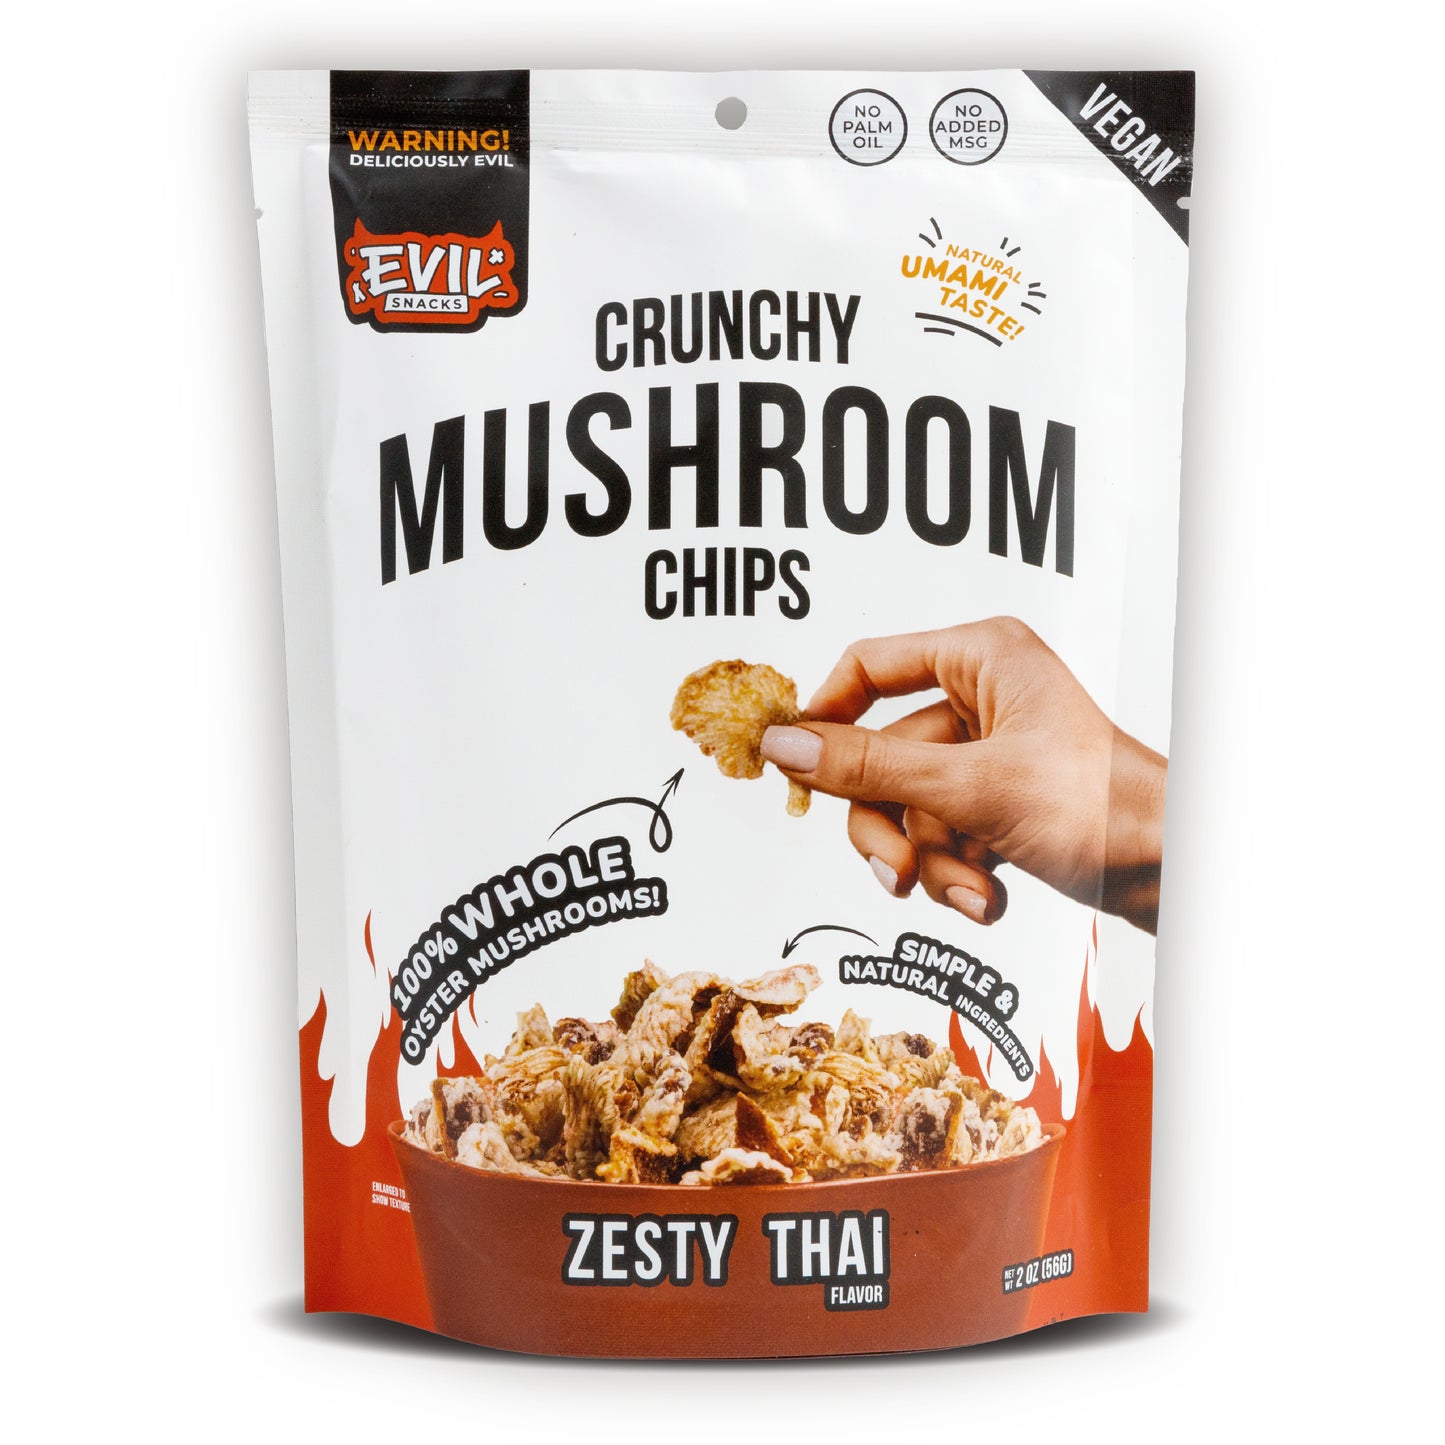 Crunchy Mushroom Chips - Zesty Thai Flavor